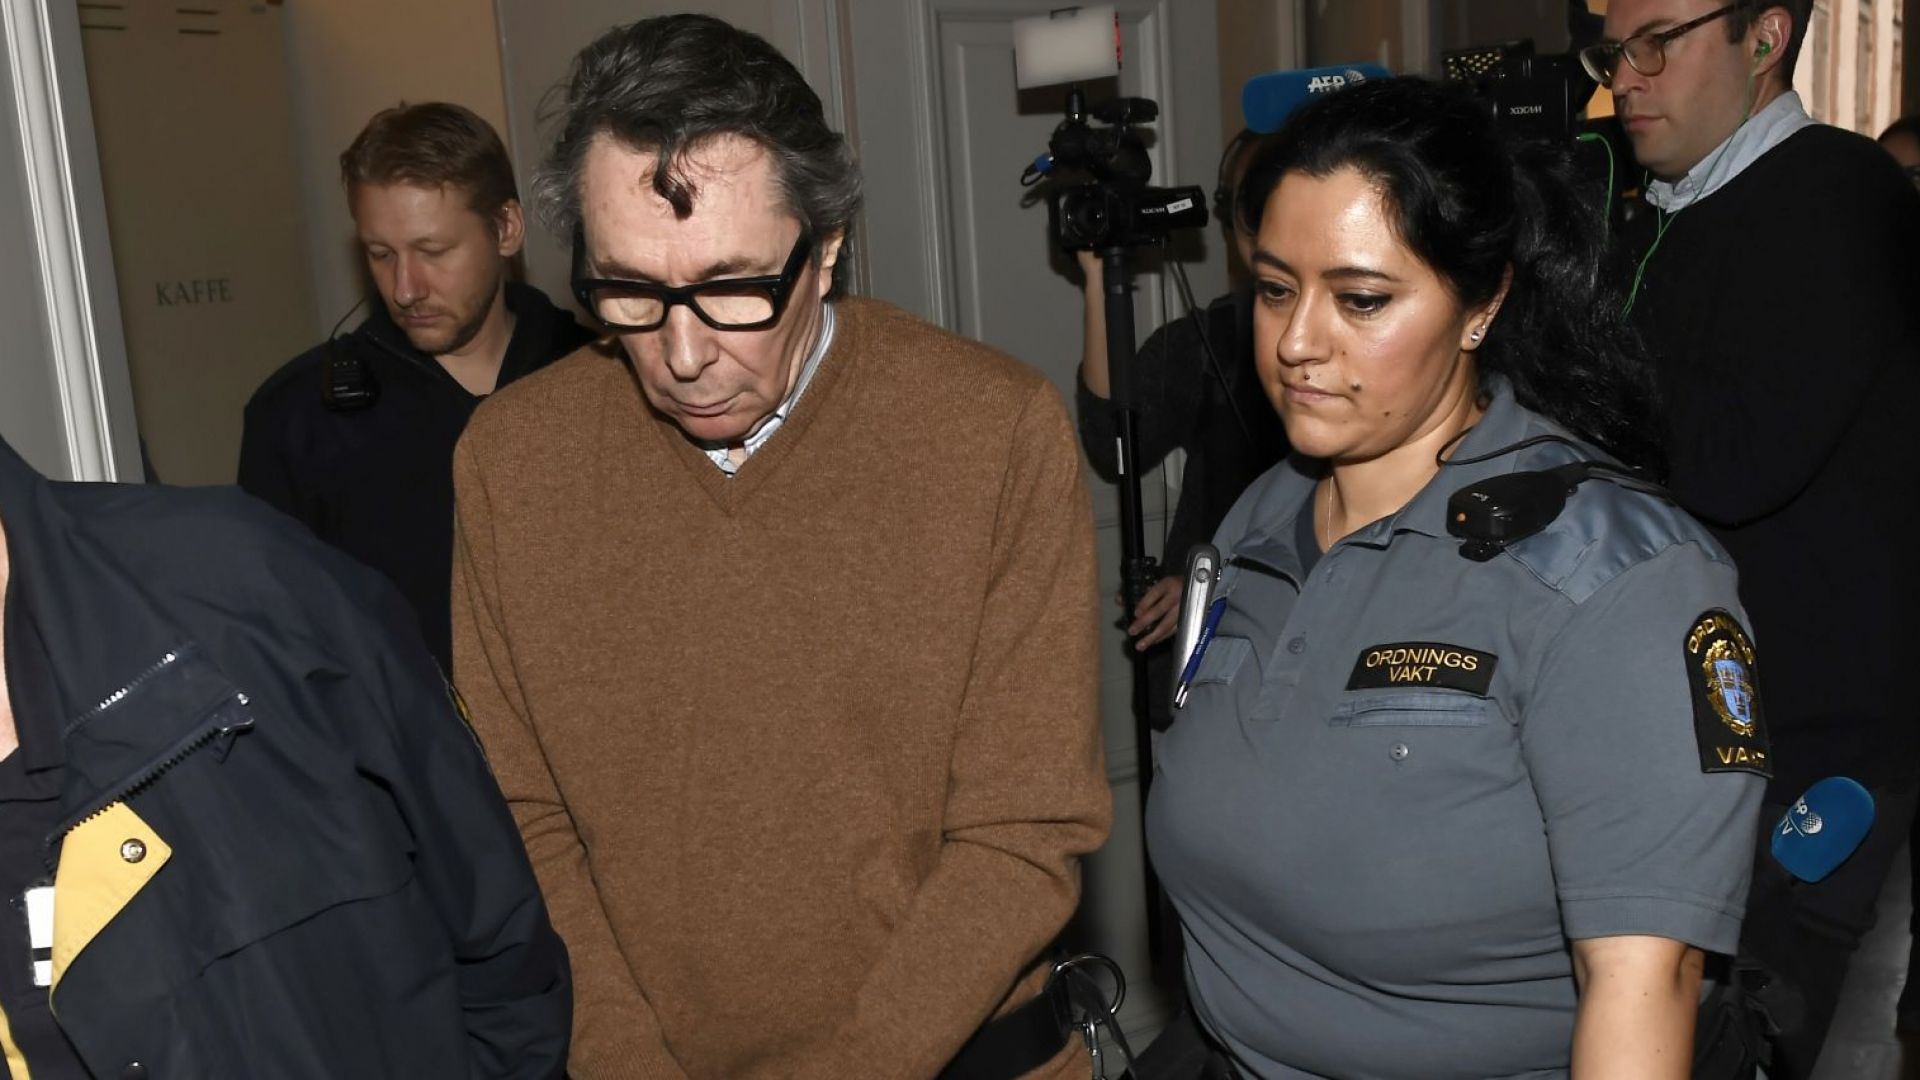 Шведският апелативен съд осъди за второ изнасилване френския фотограф Жан Клод